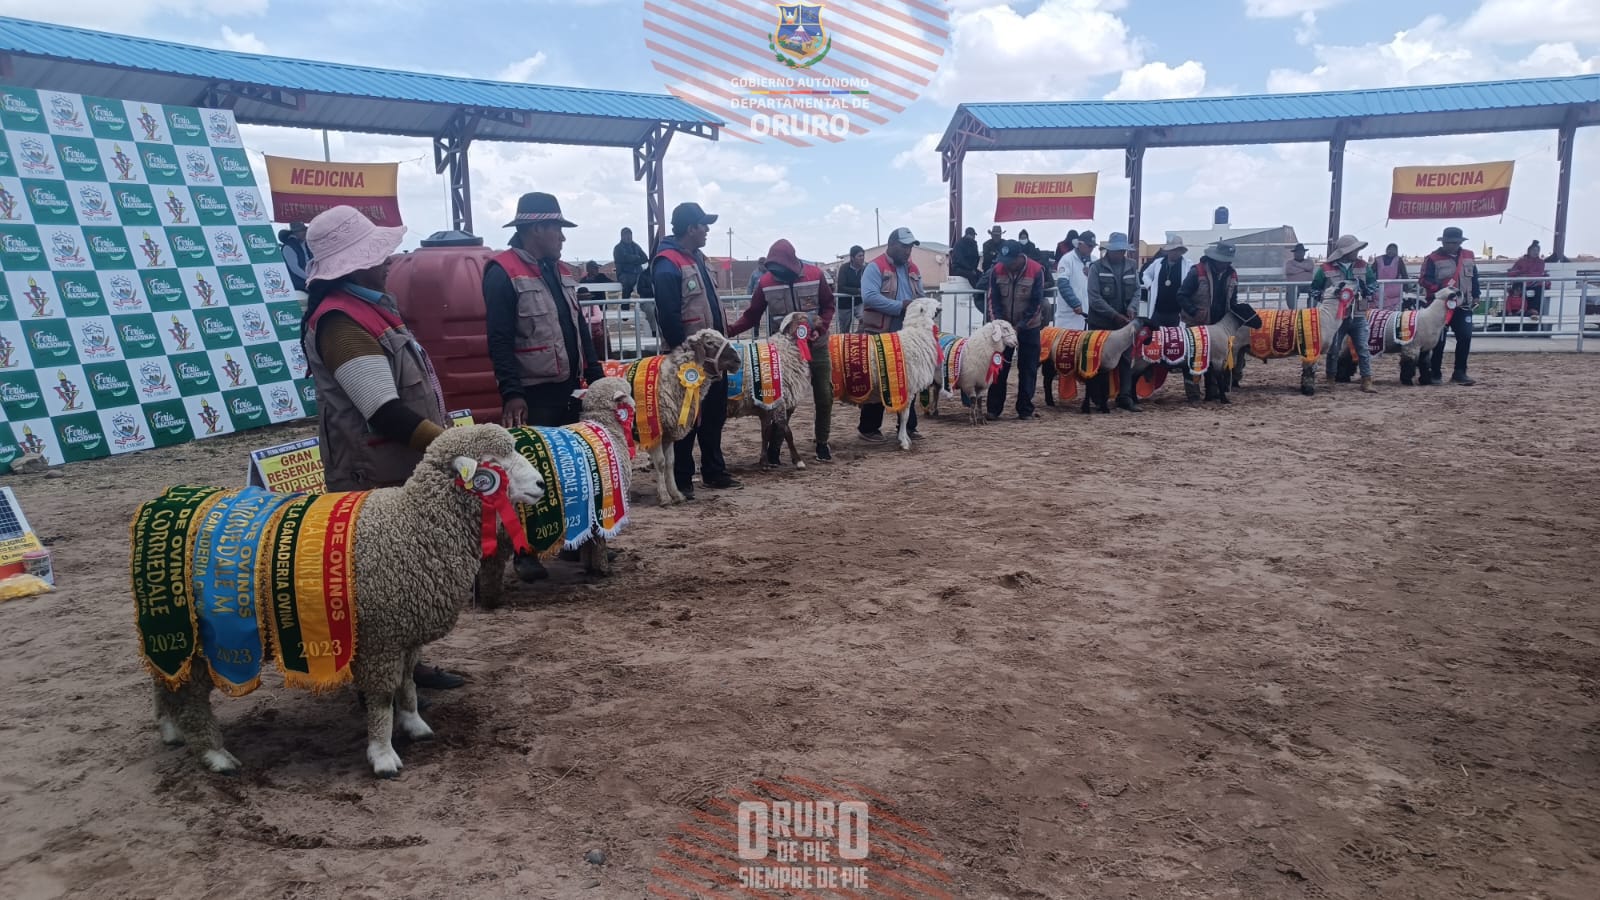 5ta Feria Nacional de Ovinos desarrollada en el municipio El Choro, actividad que conto con el respaldo del Gobierno Autónomo Departamental de Oruro, a través de la Secretaria Departamental de Desarrollo Productivo e Industria.